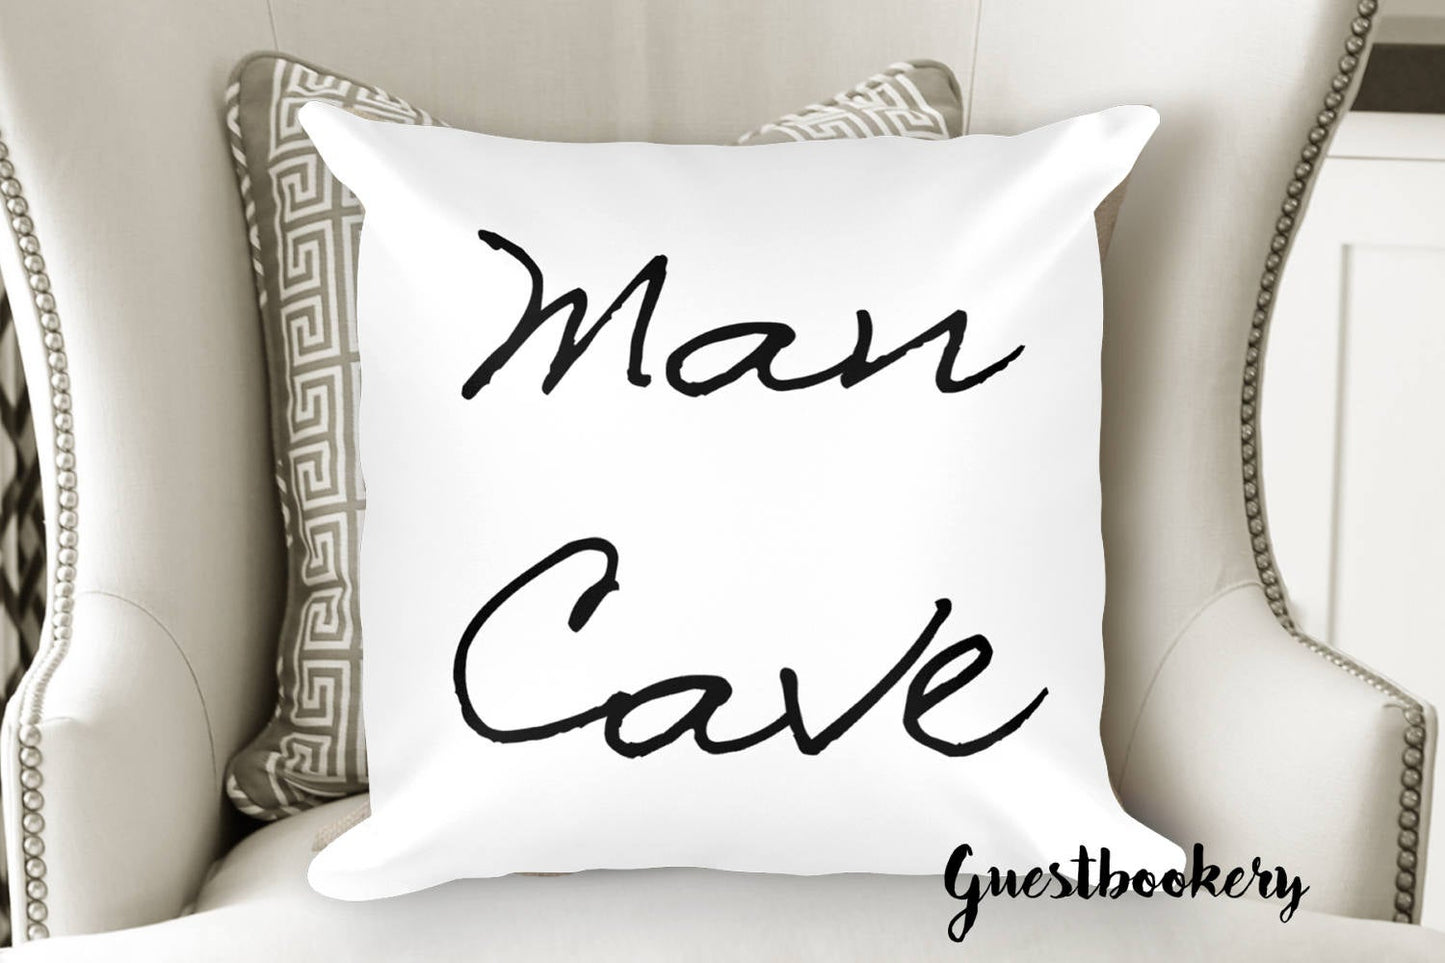 Man Cave Pillow